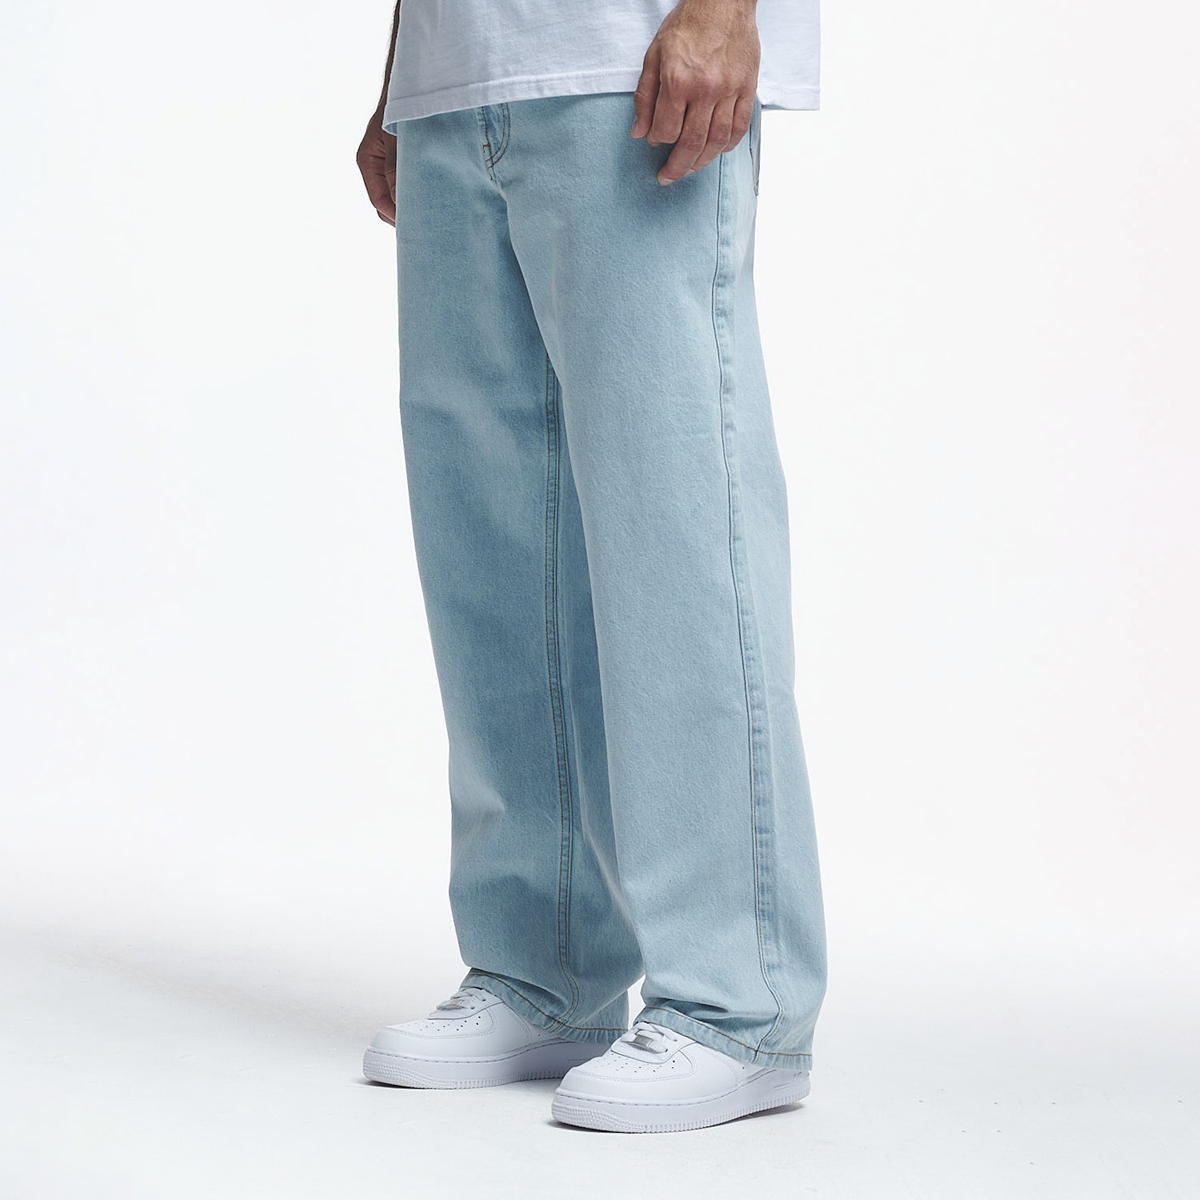 2Y Studios Adrik Basic Baggy Jeans Spijkerbroeken Heren ICE BLUE maat: 29 beschikbare maaten:29 30 31 32 33 34